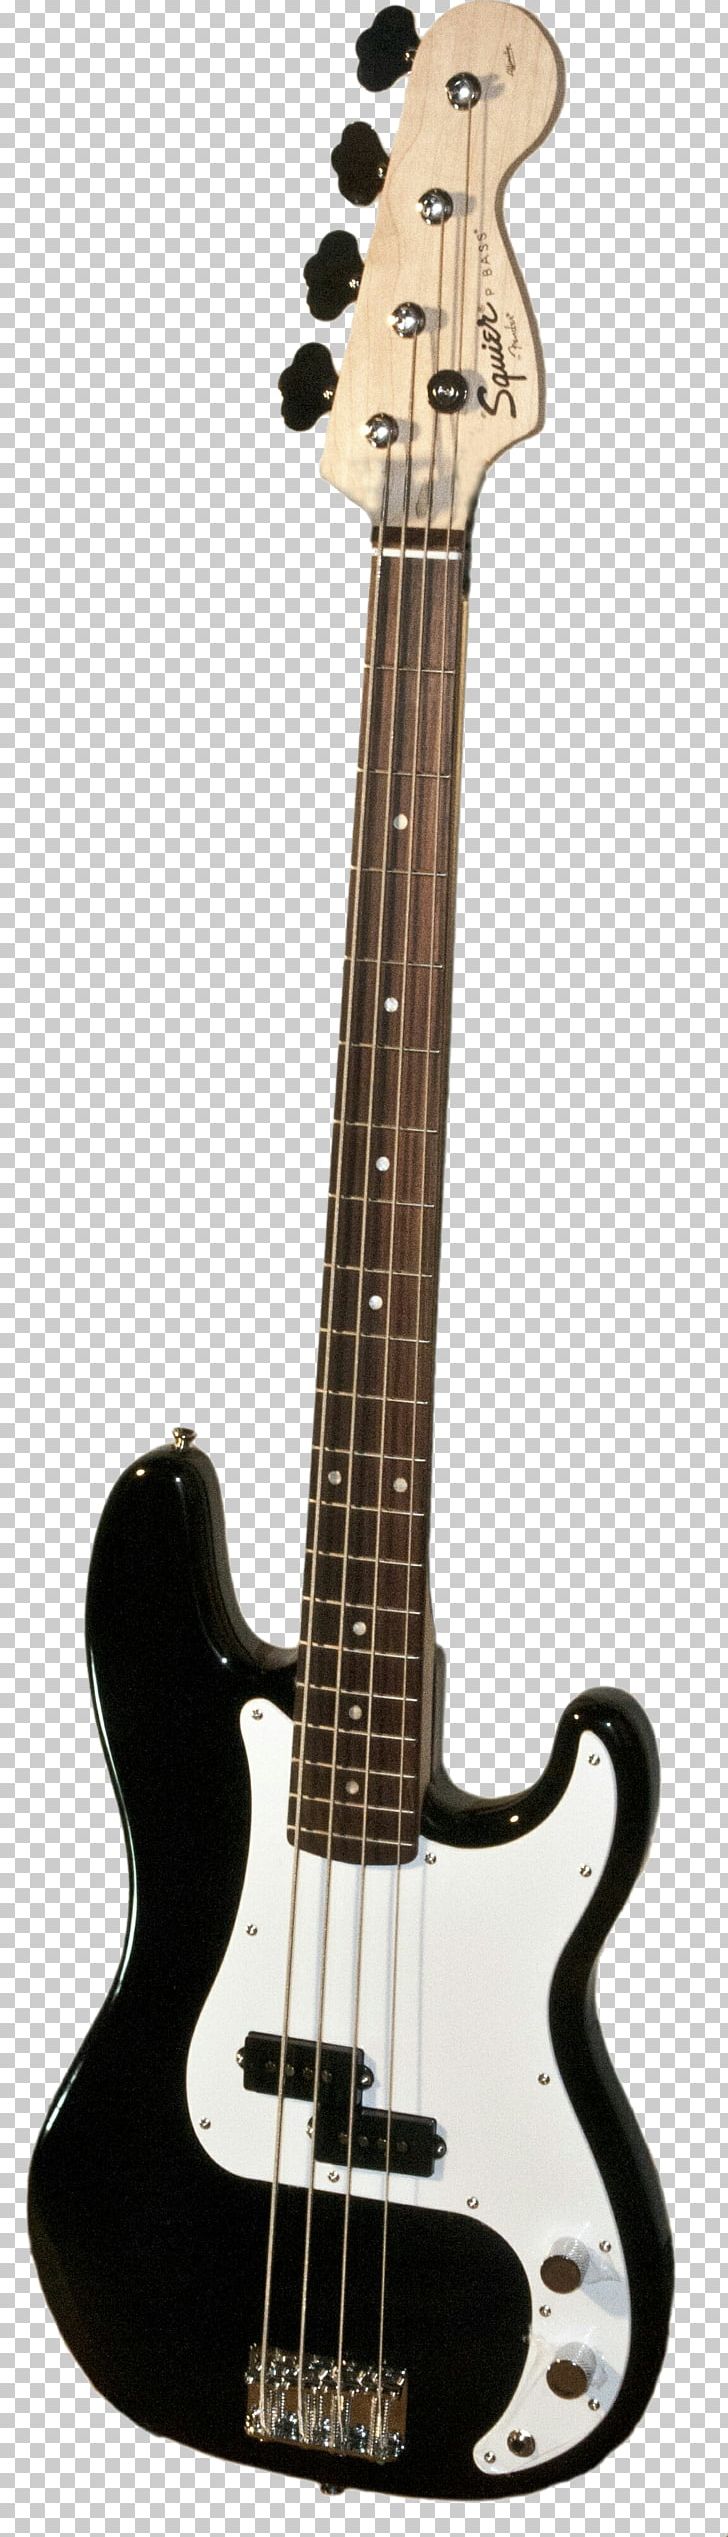 Fender Precision Bass Fender Performer Bass Guitar Amplifier Fender Jazz Bass Bass Guitar PNG, Clipart, Acoustic Electric Guitar, Bass, Bass Guitar, Bass Violin, Ele Free PNG Download